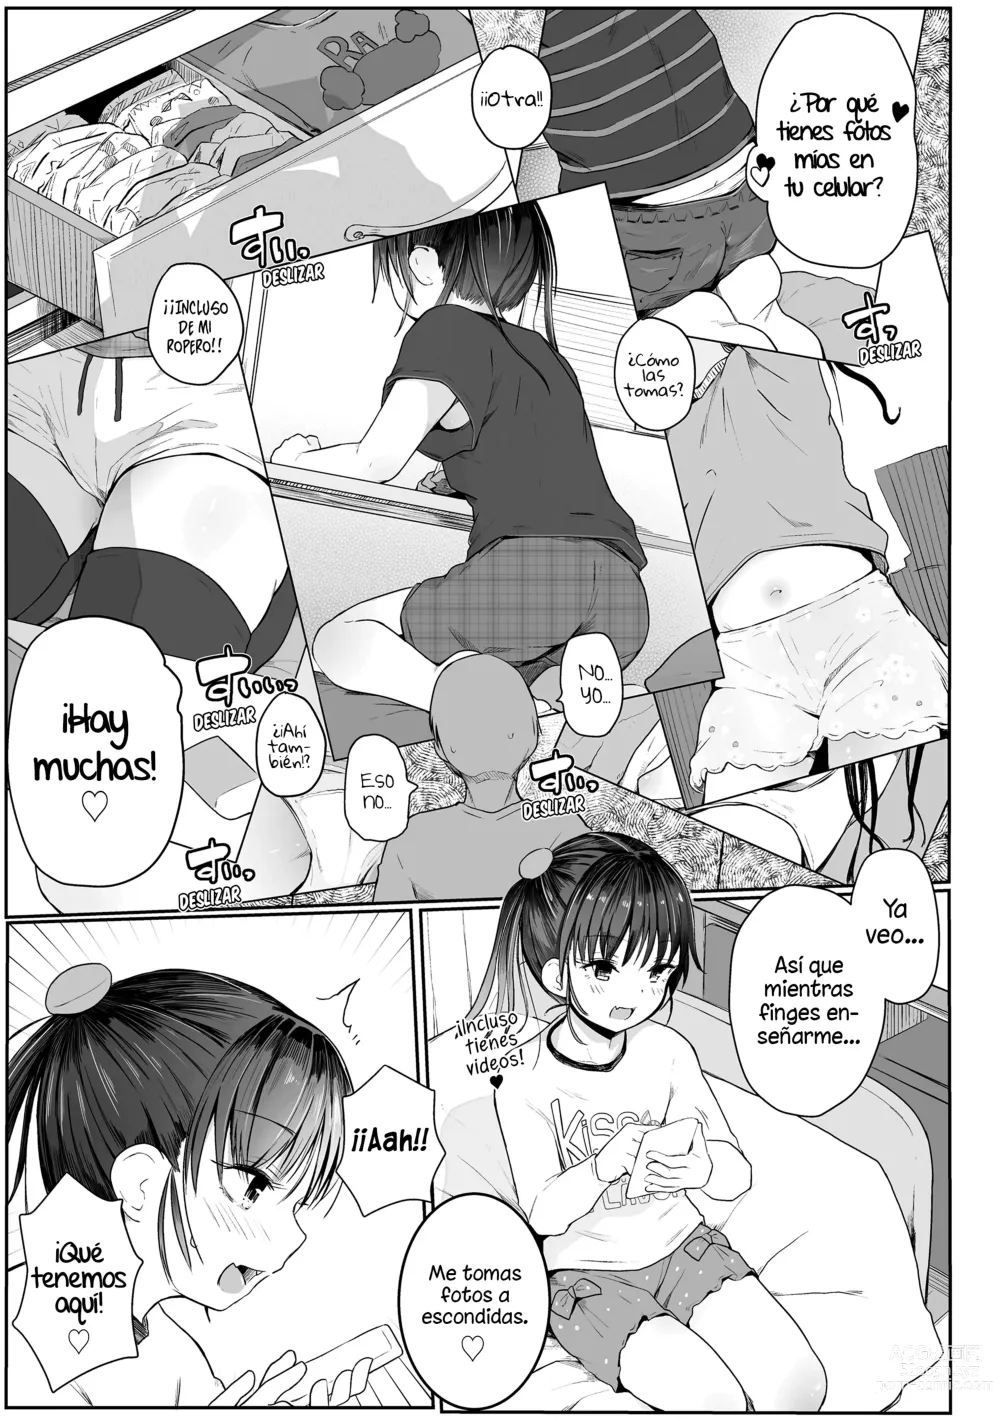 Page 3 of manga ¡Enséñame❤Sensei!